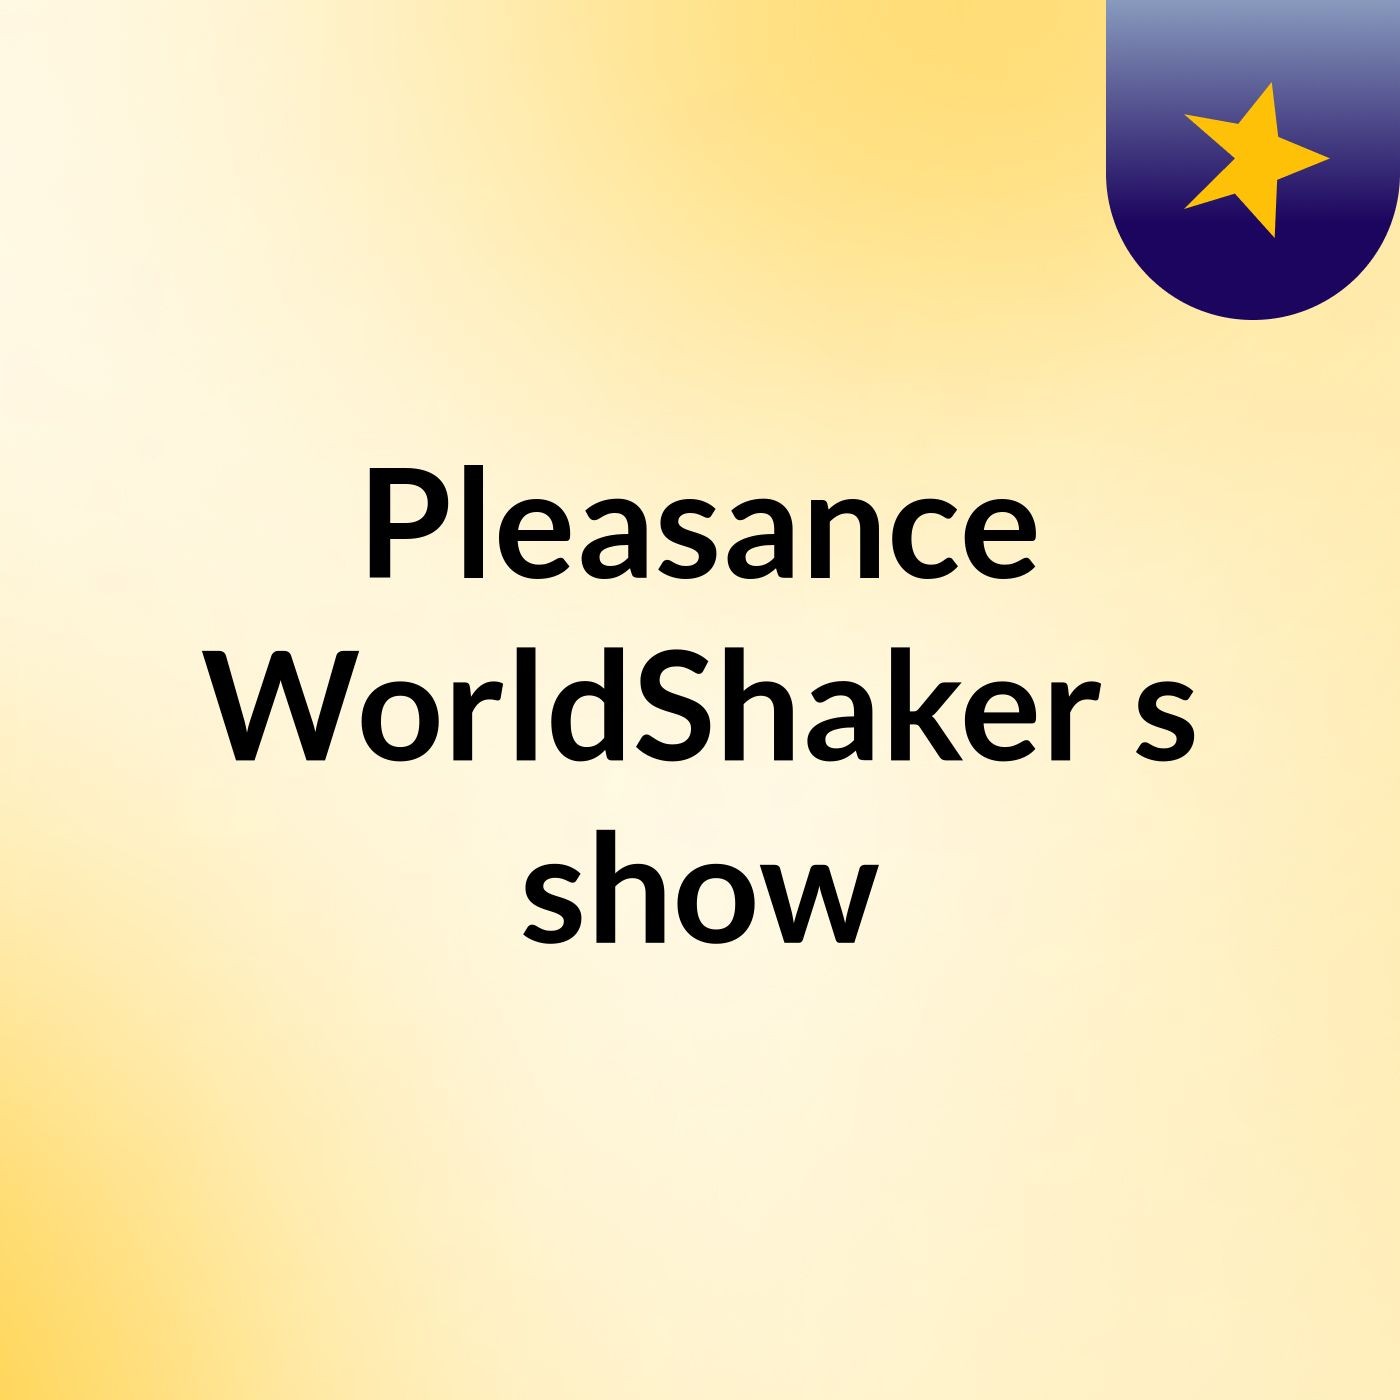 Pleasance WorldShaker's show